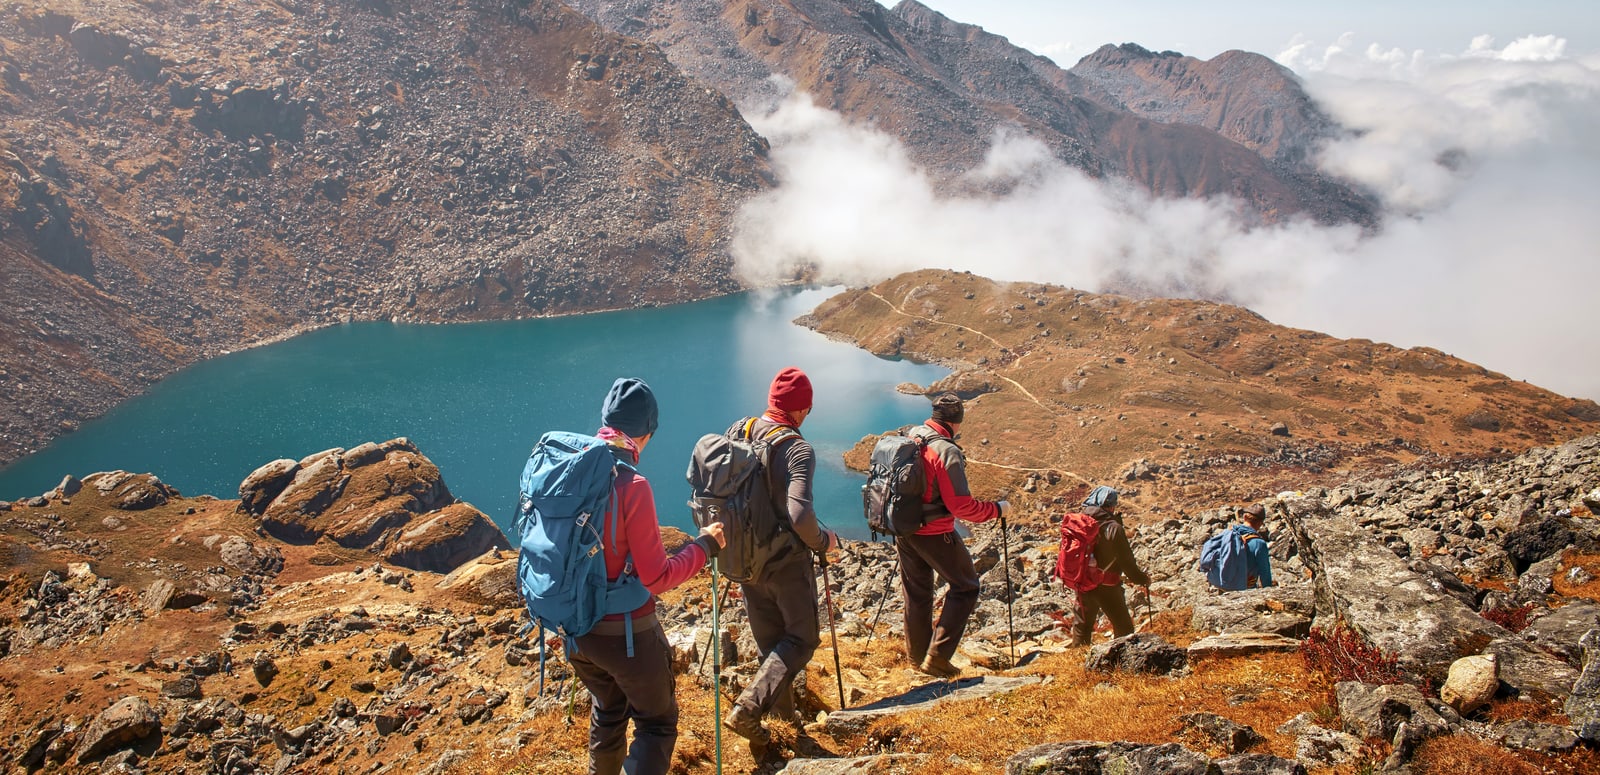 Lachen, Sikkim: Hiking, bird watching in an alpine climate